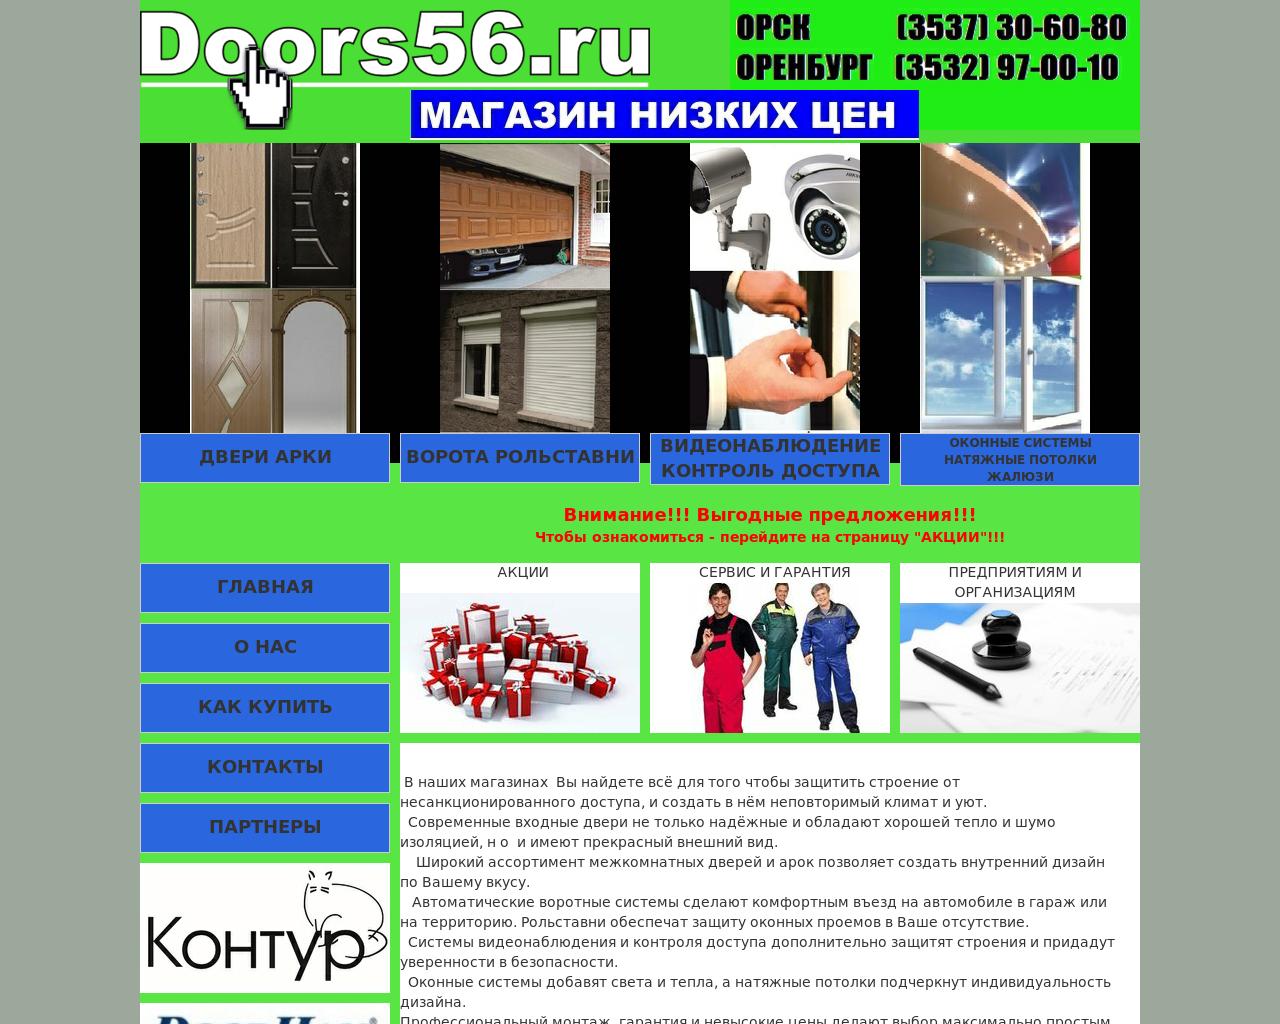 Изображение сайта doors56.ru в разрешении 1280x1024